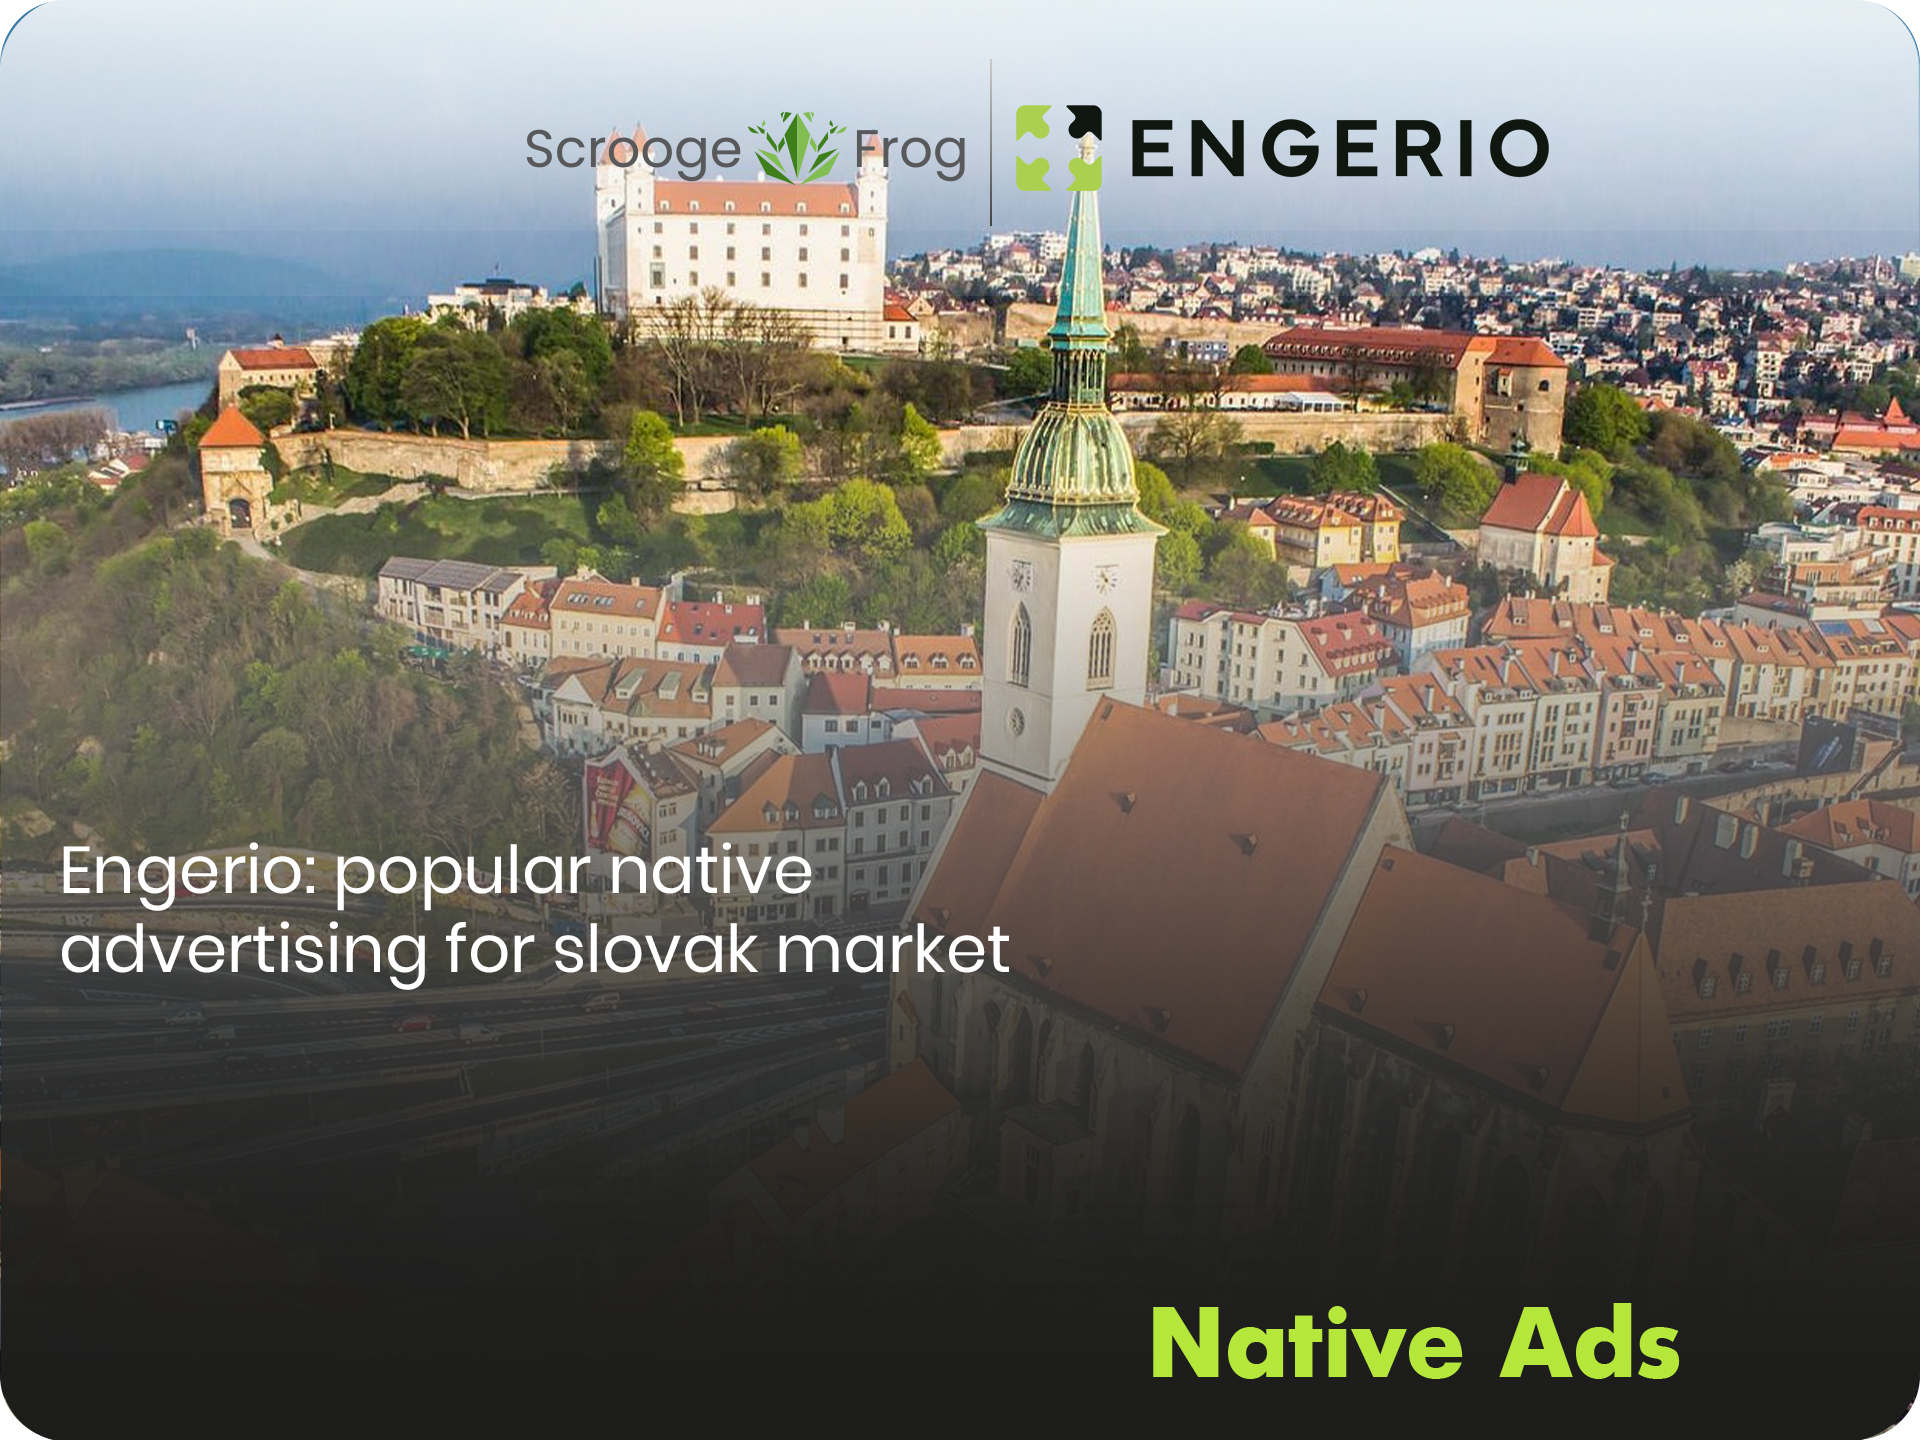 Engerio: popular native advertising for Slovak market